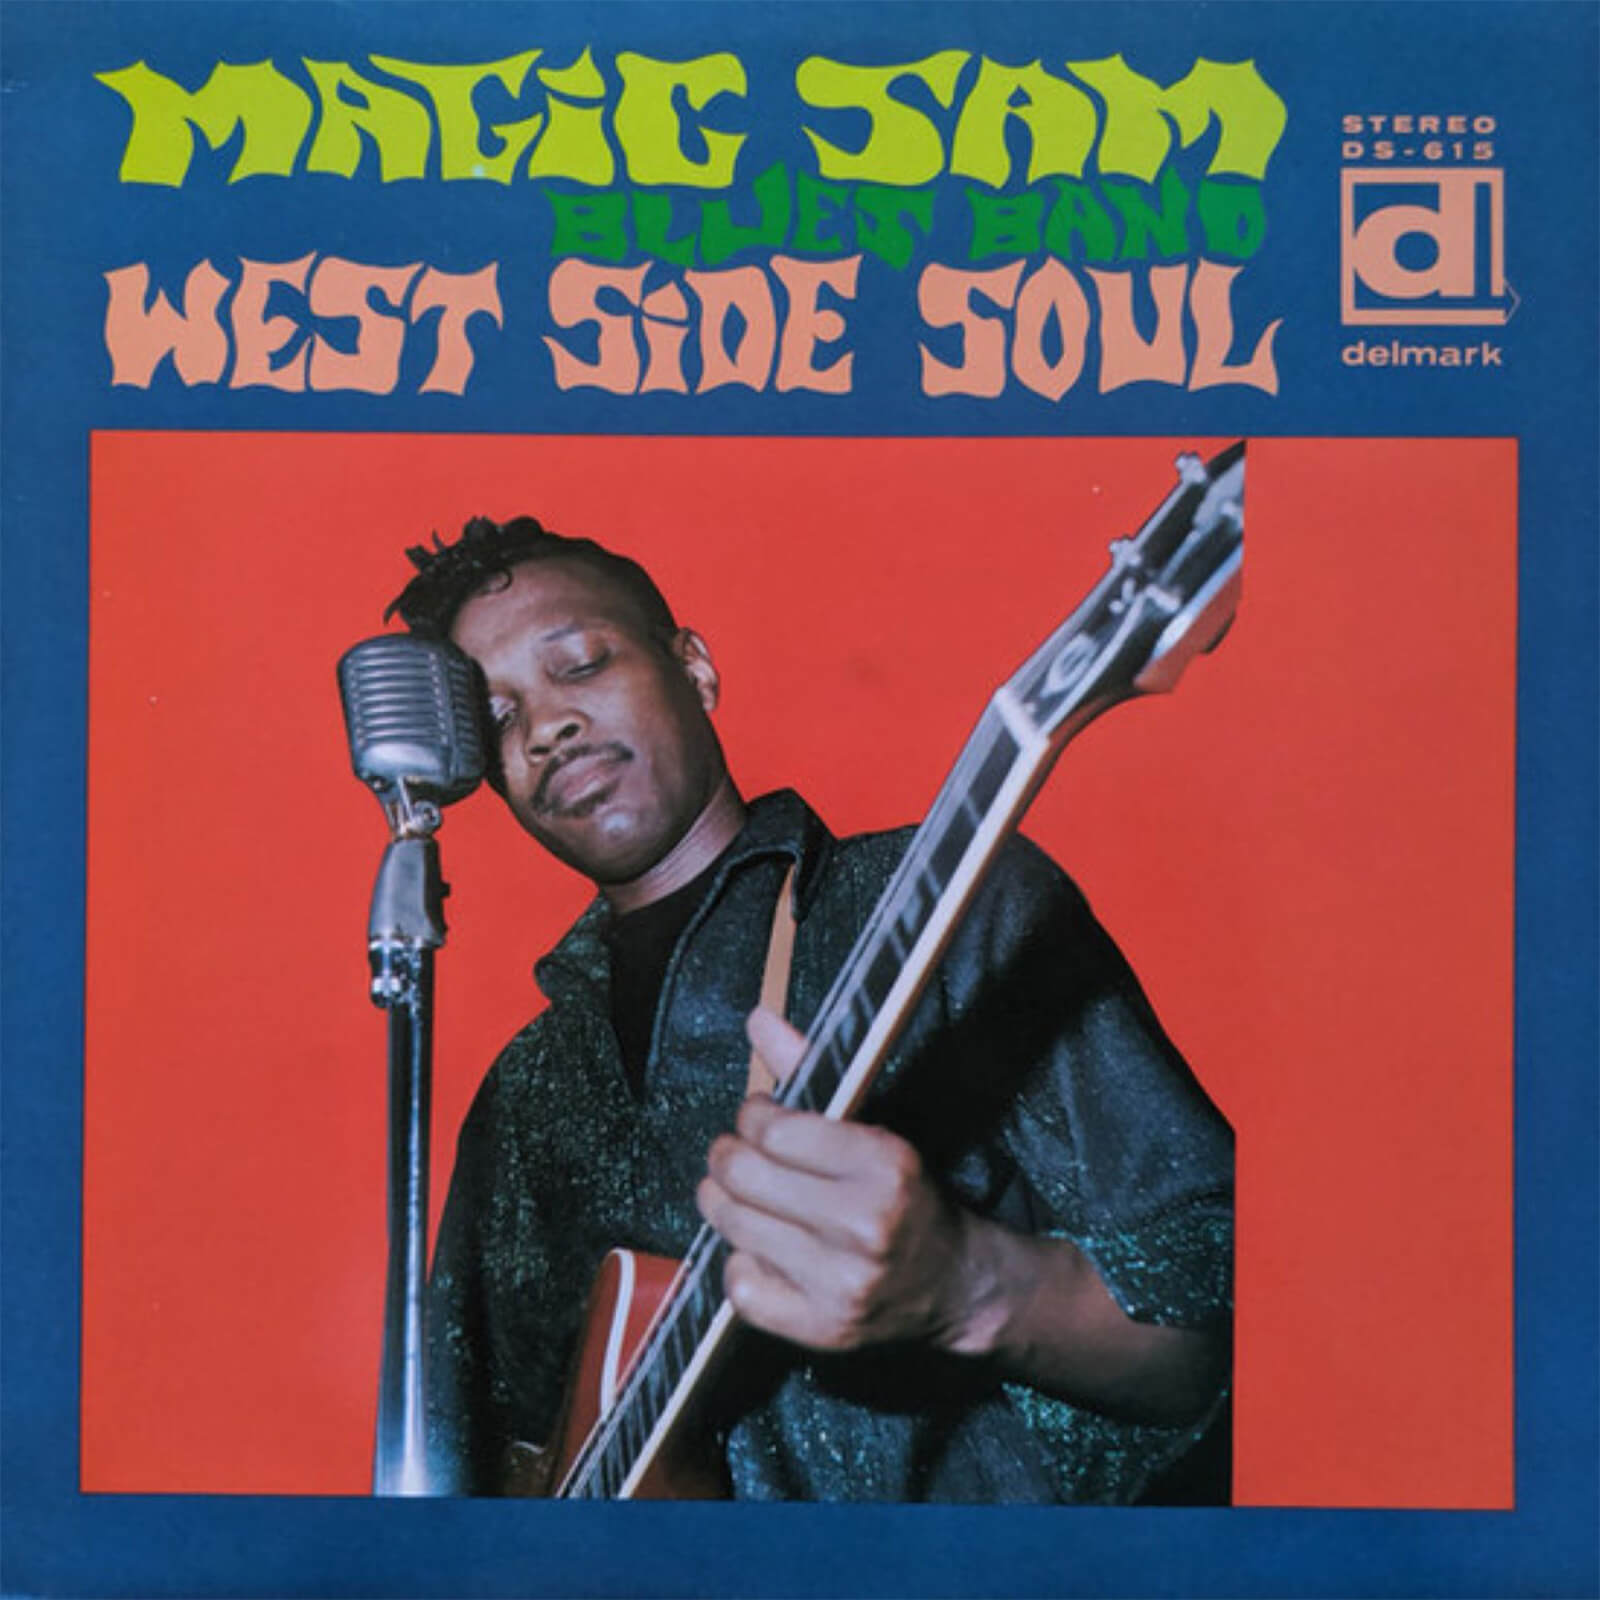 Magic Sam's Blues Band - West Side Soul LP